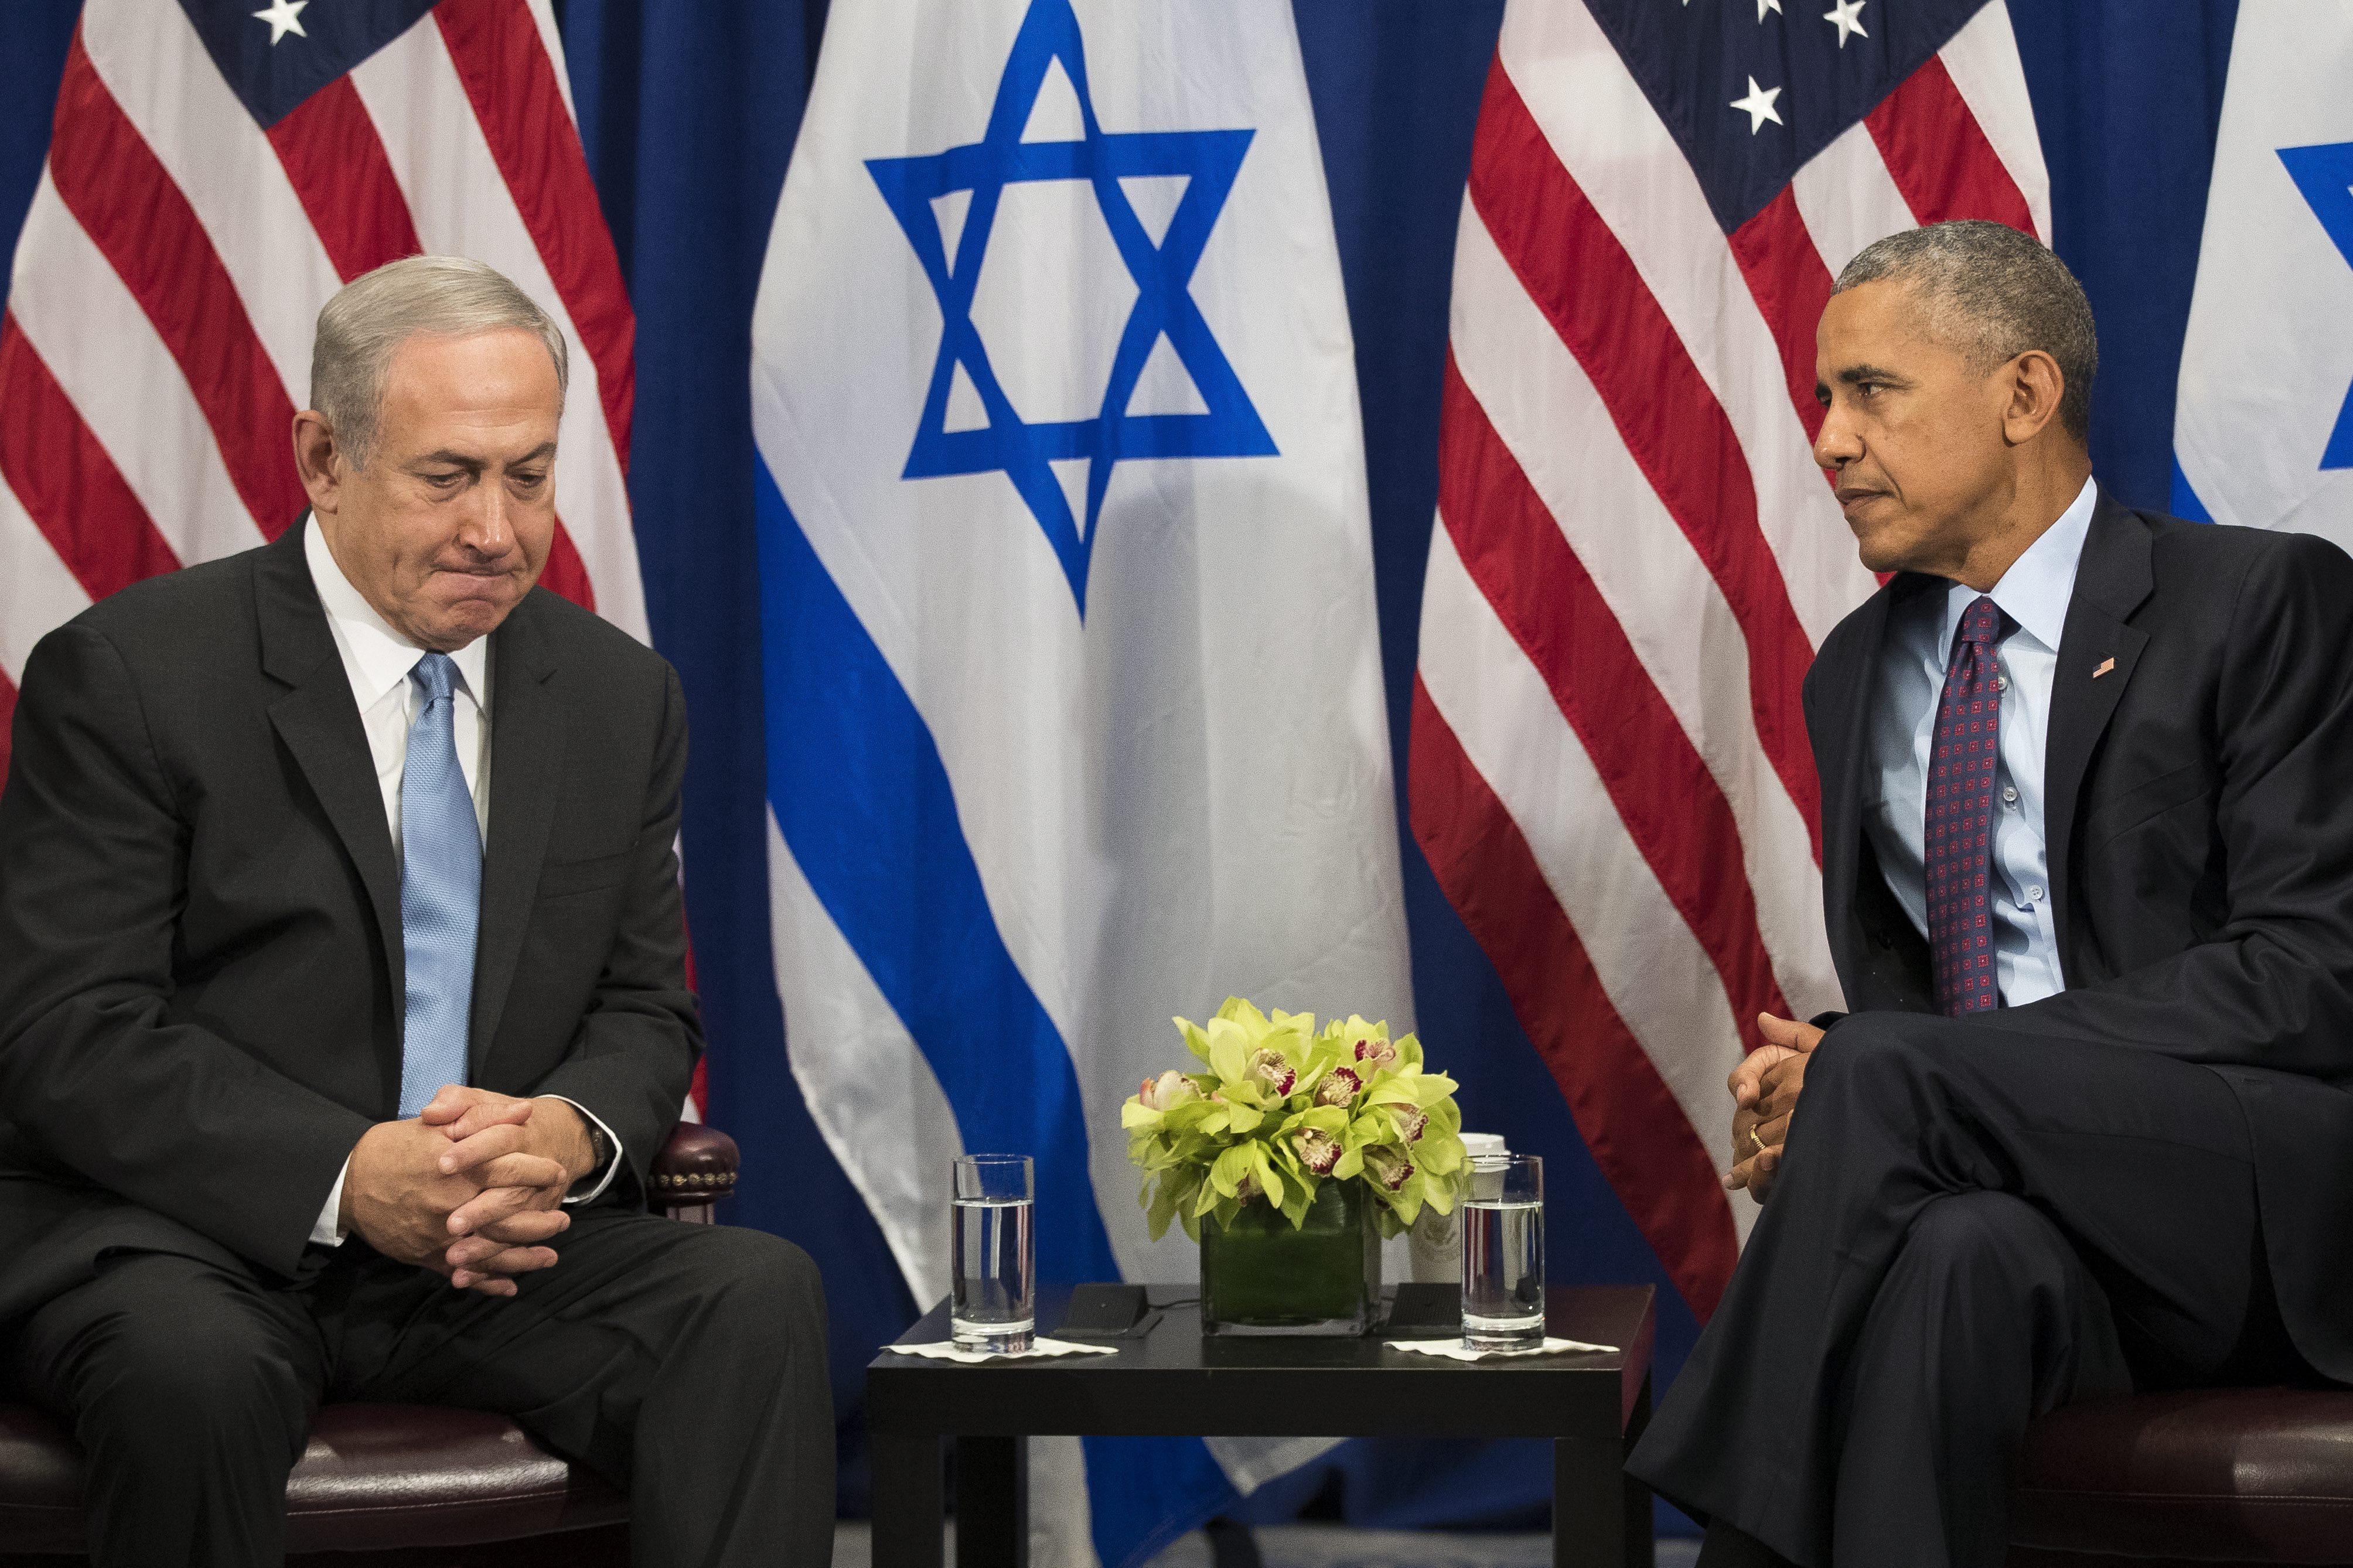 EU quiere a Israel "estable" y en paz con palestinos: Obama a Netanyahu